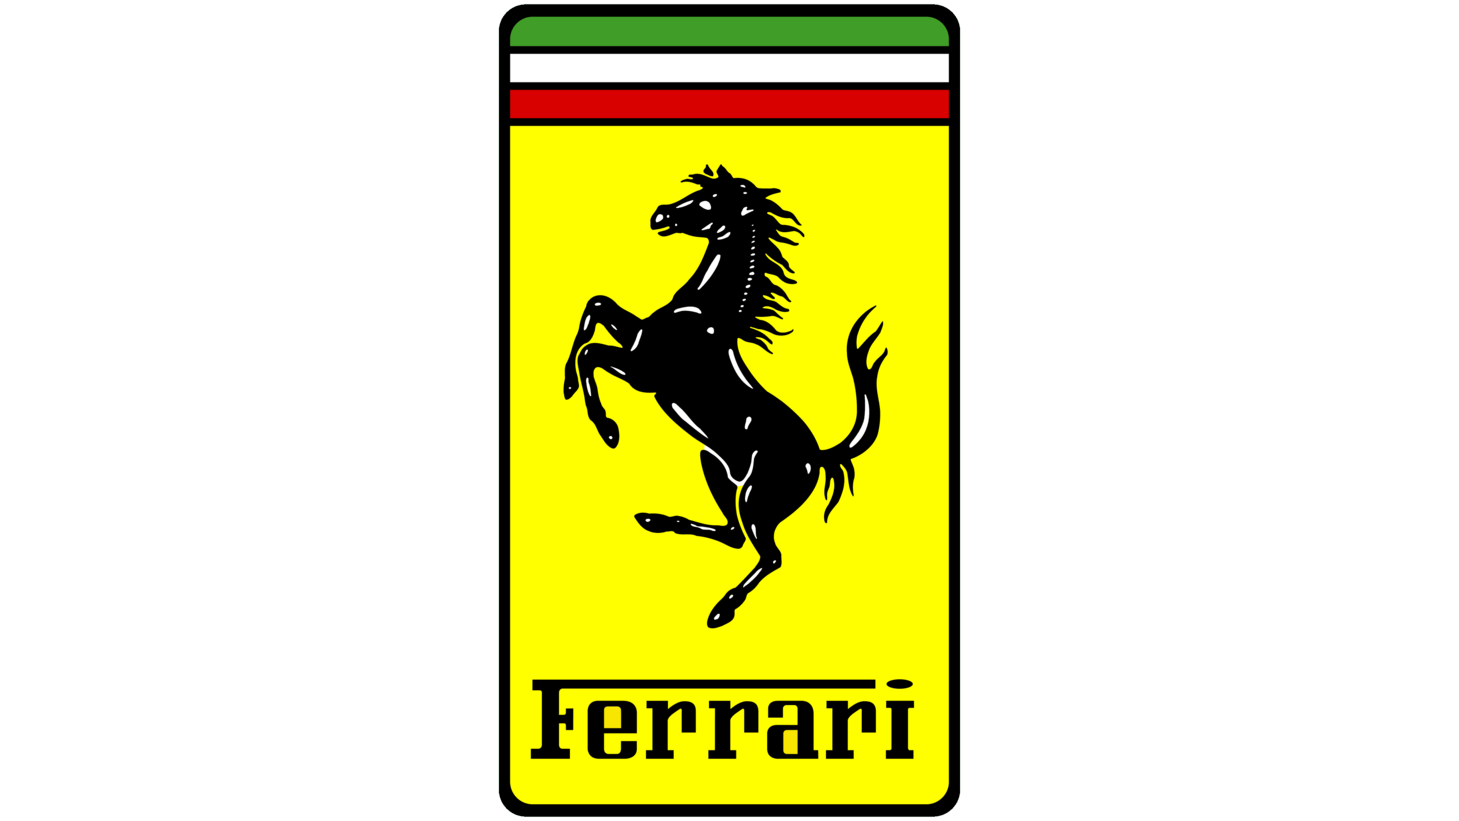 Ferrari scuderia sign 1994